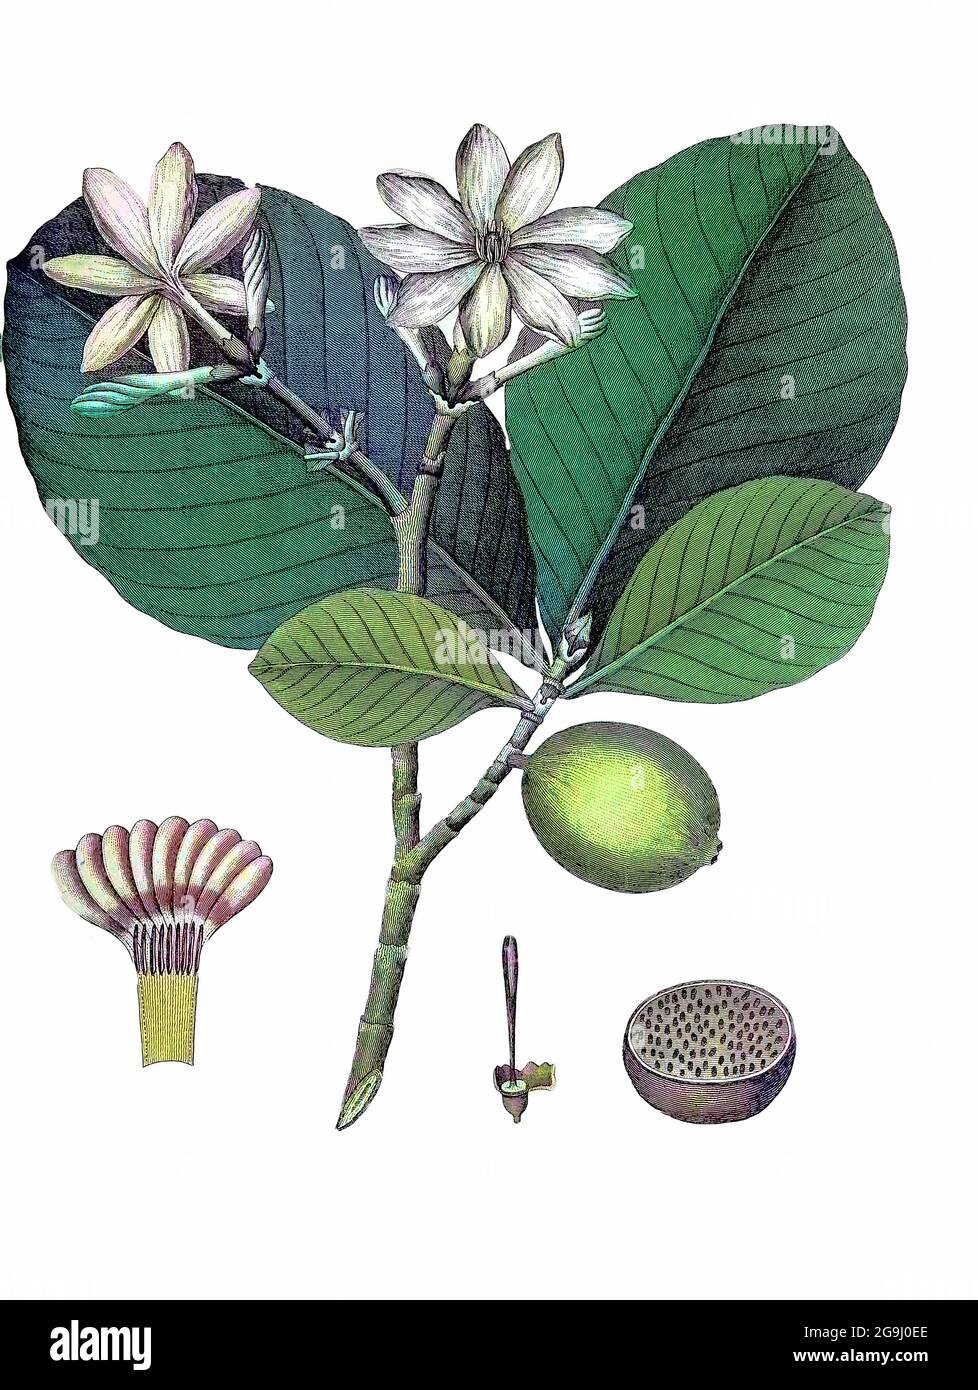 Le Gardenia latifolia, de couleur machine (ai), est un arbre de taille moyenne à grande et de longue durée de vie de la famille des Rubiaceae.[2] son nom commun anglais est Indian Boxwood ou Ceylon Boxwood.[3] il se trouve dans les forêts de Madhya Pradesh en Inde, Et a été largement cultivé ailleurs, au point de naturalisation, en particulier au Nigeria, en Afrique de l'Ouest où l'arbre est très apprécié pour ses fruits et son ombre. Gravure sur plaque de coperplate de l'Encyclopedia Londinensis or, Dictionnaire universel des arts, des sciences et de la littérature; Volume VIII; édité par Wilkes, Jean. Publié à Londres en 1810. Banque D'Images